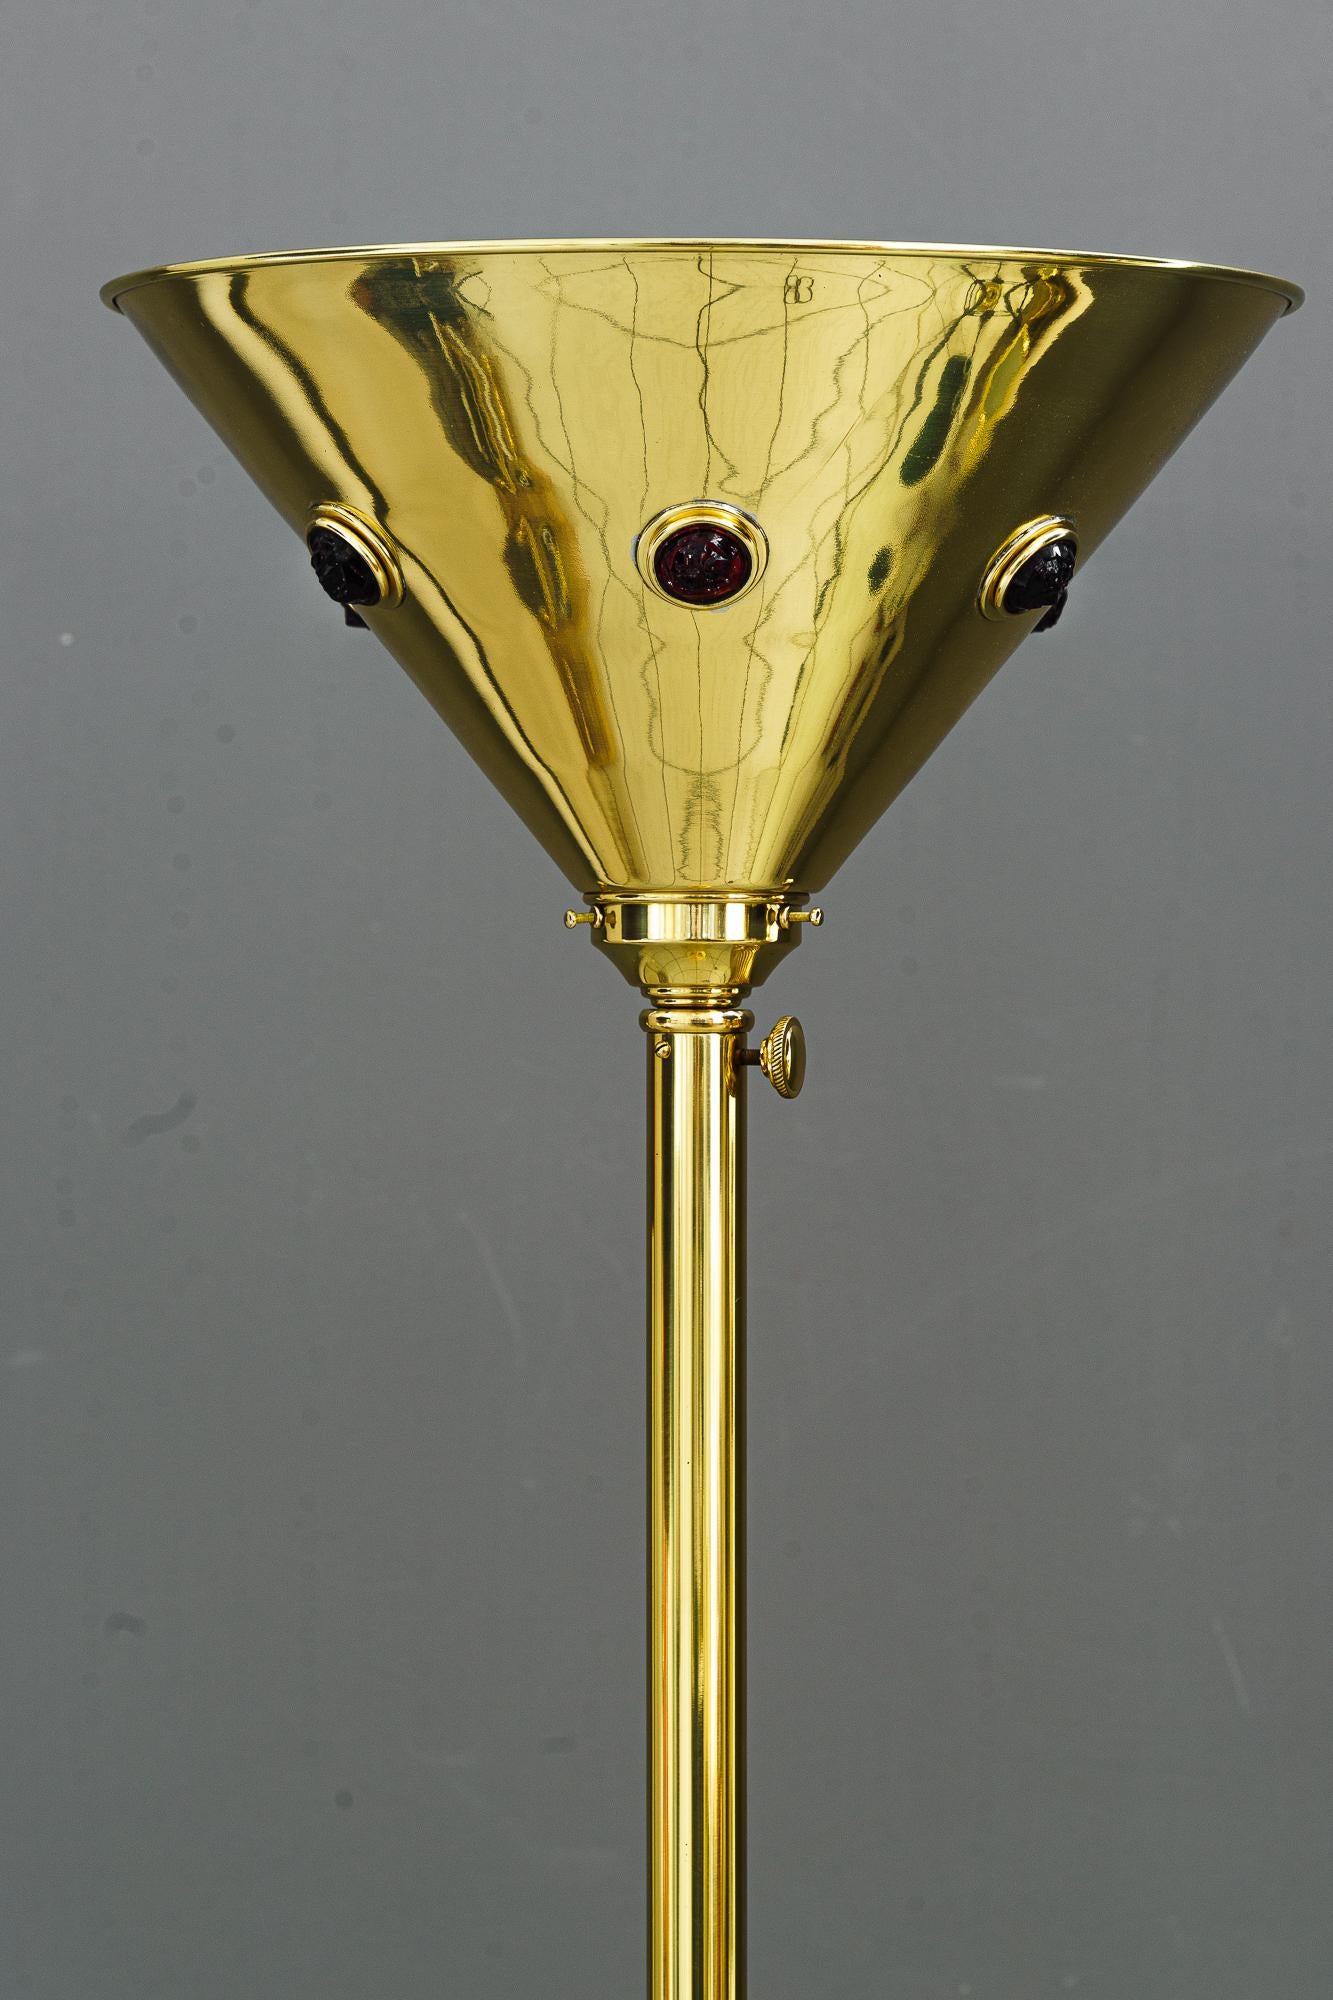 Lampadaire Art Déco viennois des années 1920
Polis et émaillés au four
Pierres de verre opalin rouge originales
Réglable de 150cm à 185cm de hauteur